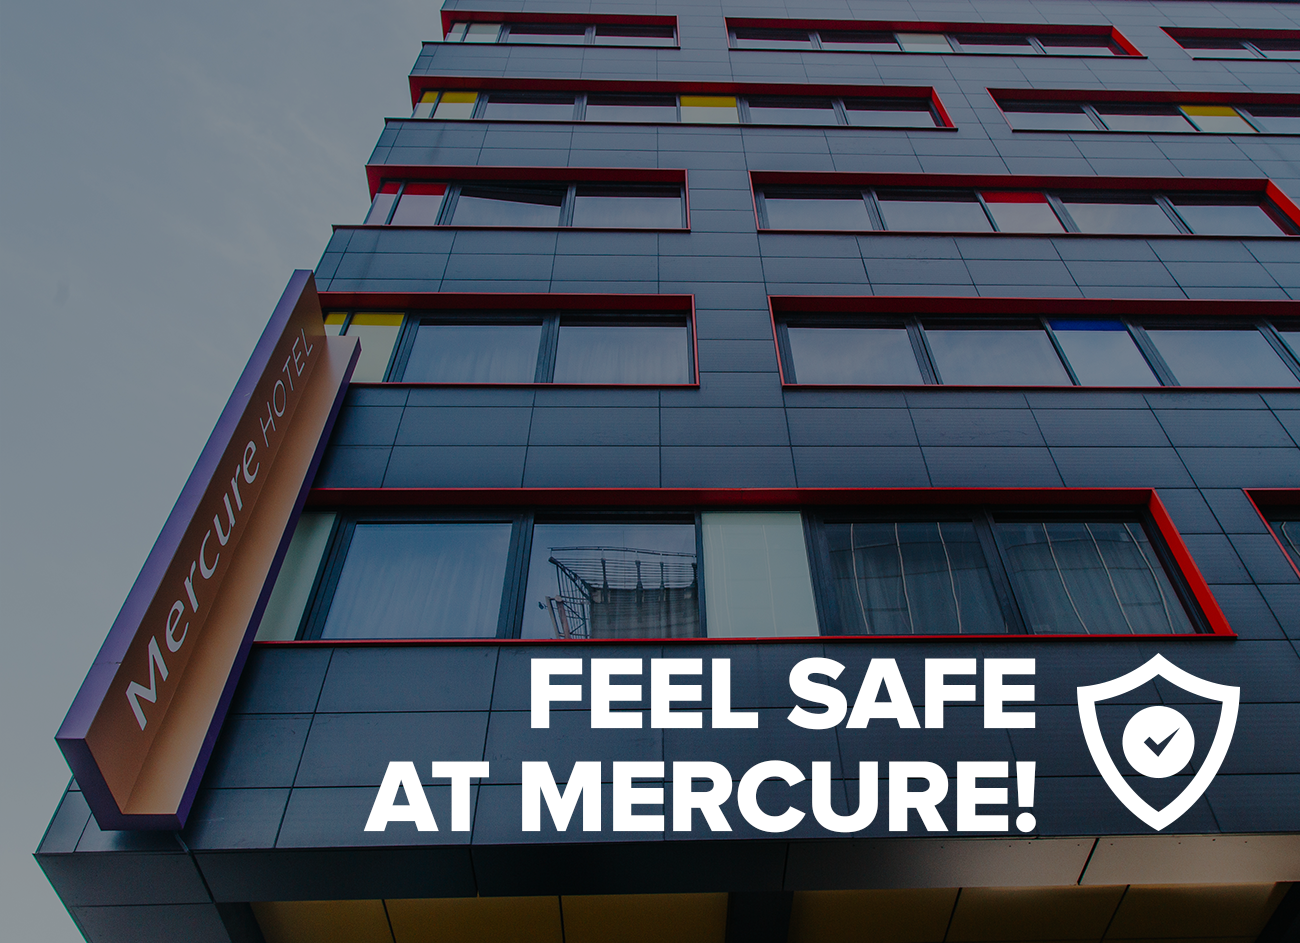 Ви в безпеці у Mercure!